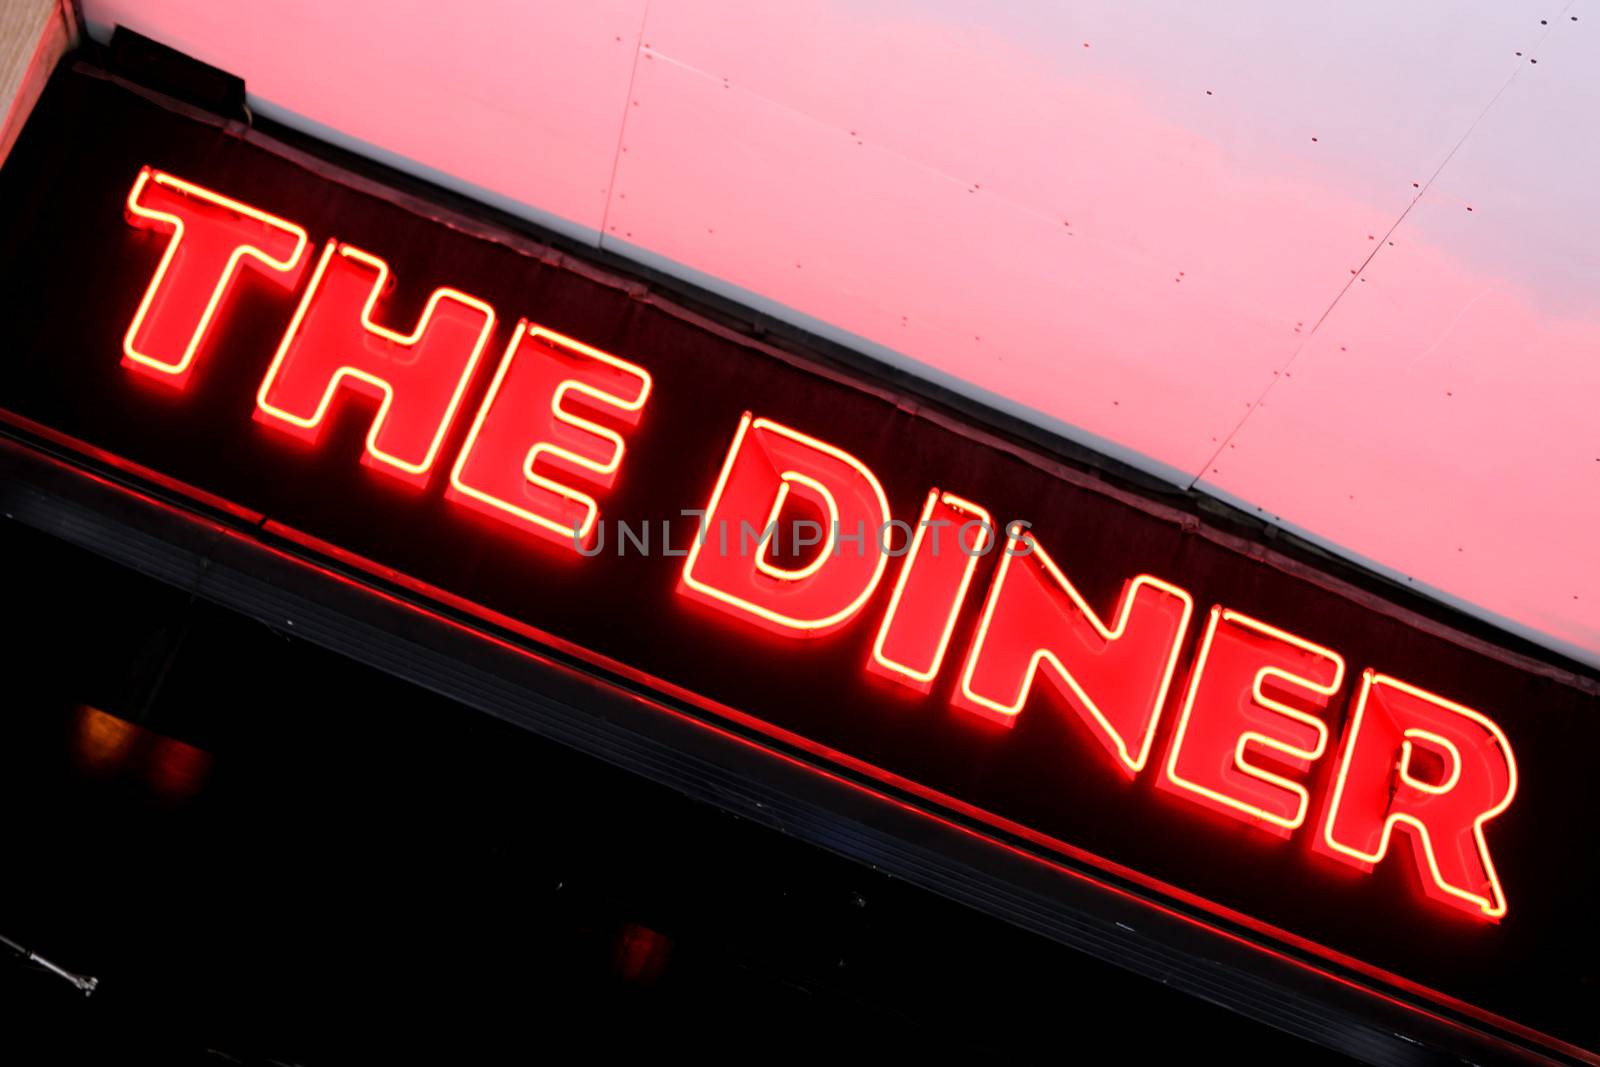 The Diner Restaurant Sign Ganton Street London by Whiteboxmedia